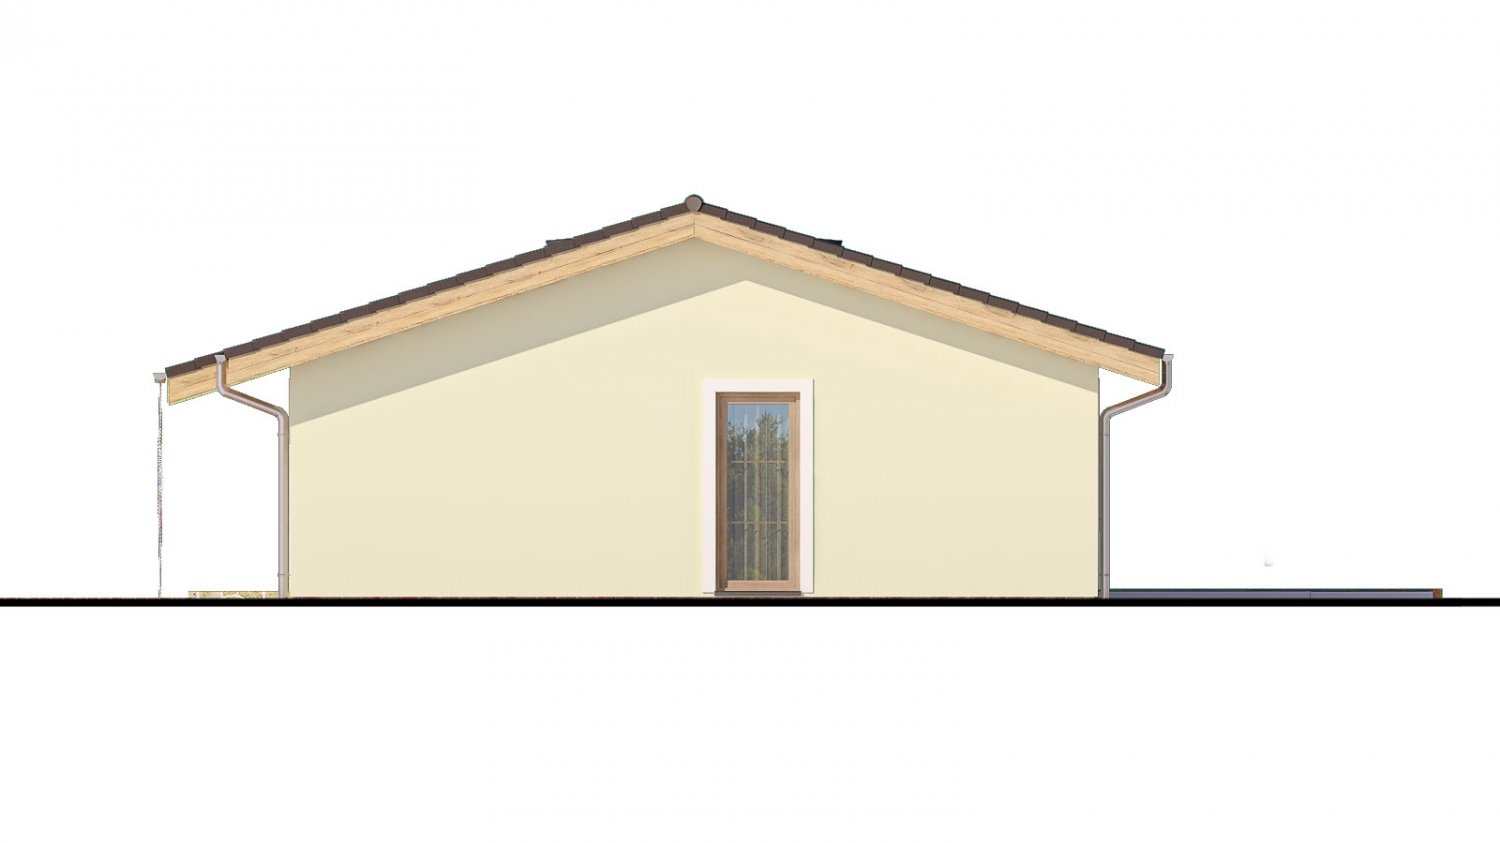 projekt rodinného domu na úzky pozemok so sedlovou strechou